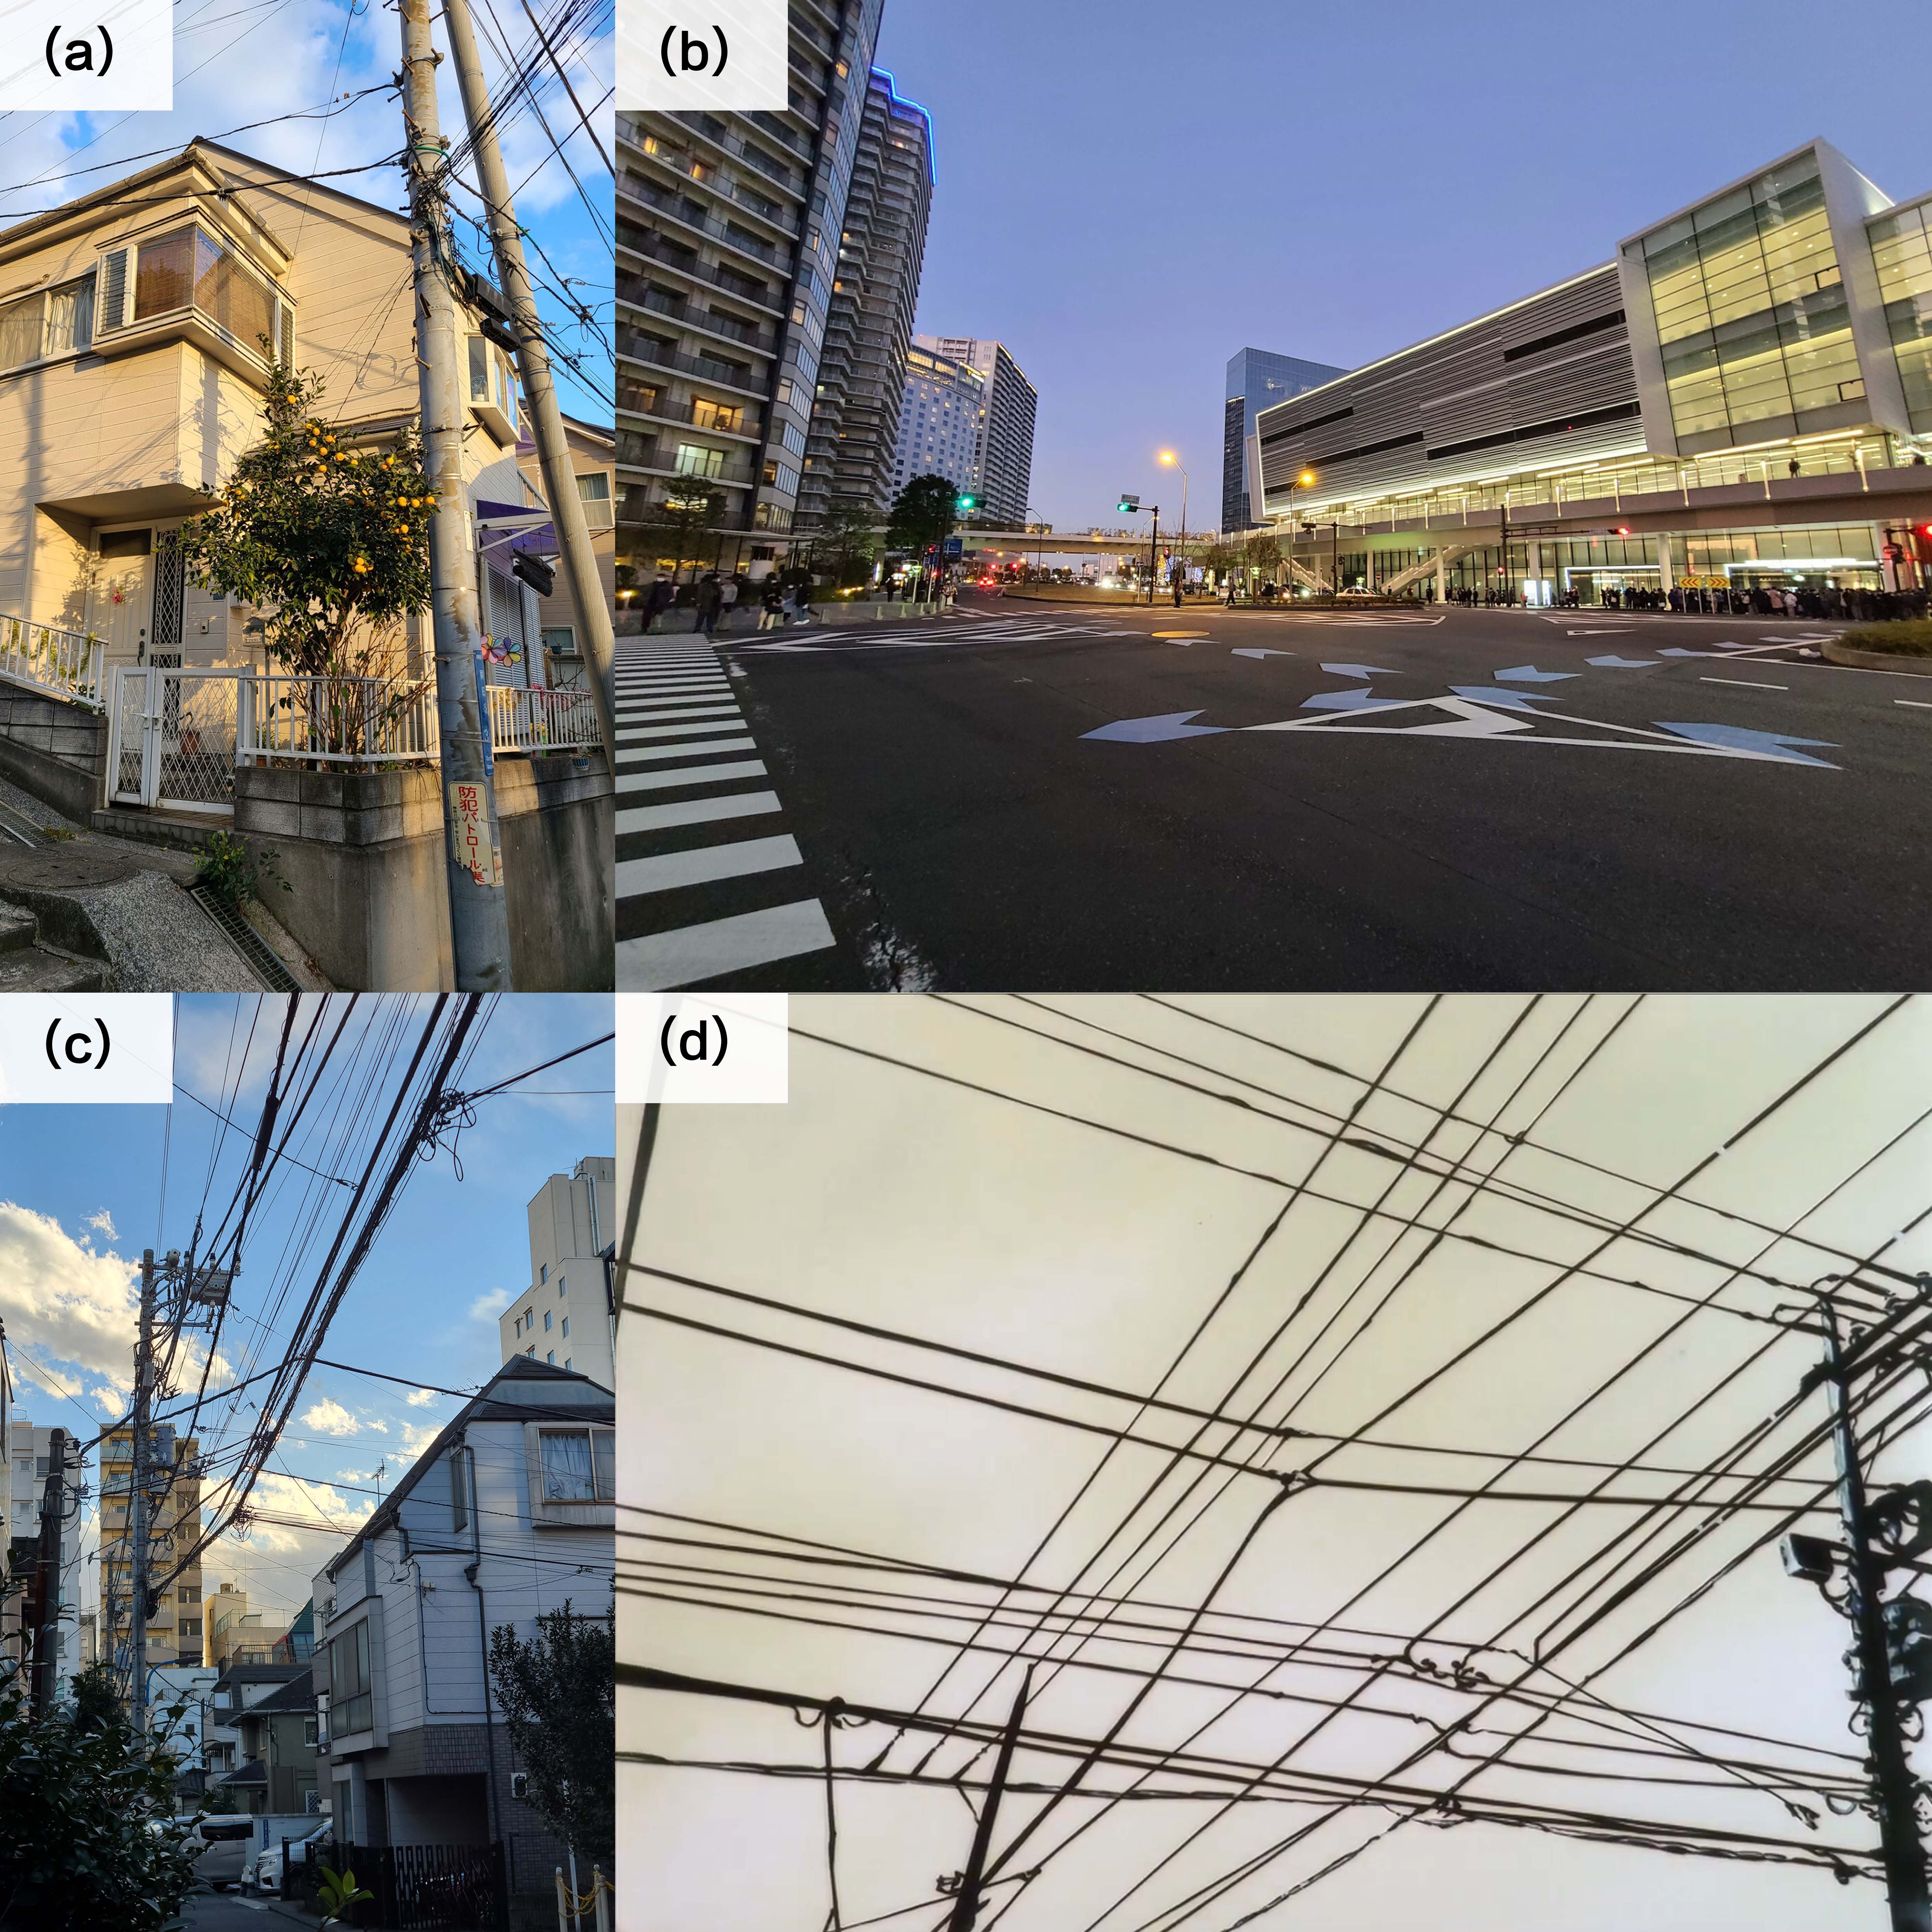 日本街头的电线网络。(a)和(c)分别摄于横滨老郊区和新大久保，可以看到老城区的架空电线错综复杂。(b)摄于横滨港未来。新街区多采用地下电缆，没有电线杆显得十分整洁。(d)《Lain》中的电线杆和电线，隐喻Wired（剧中的互联网）世界连接所有人类。